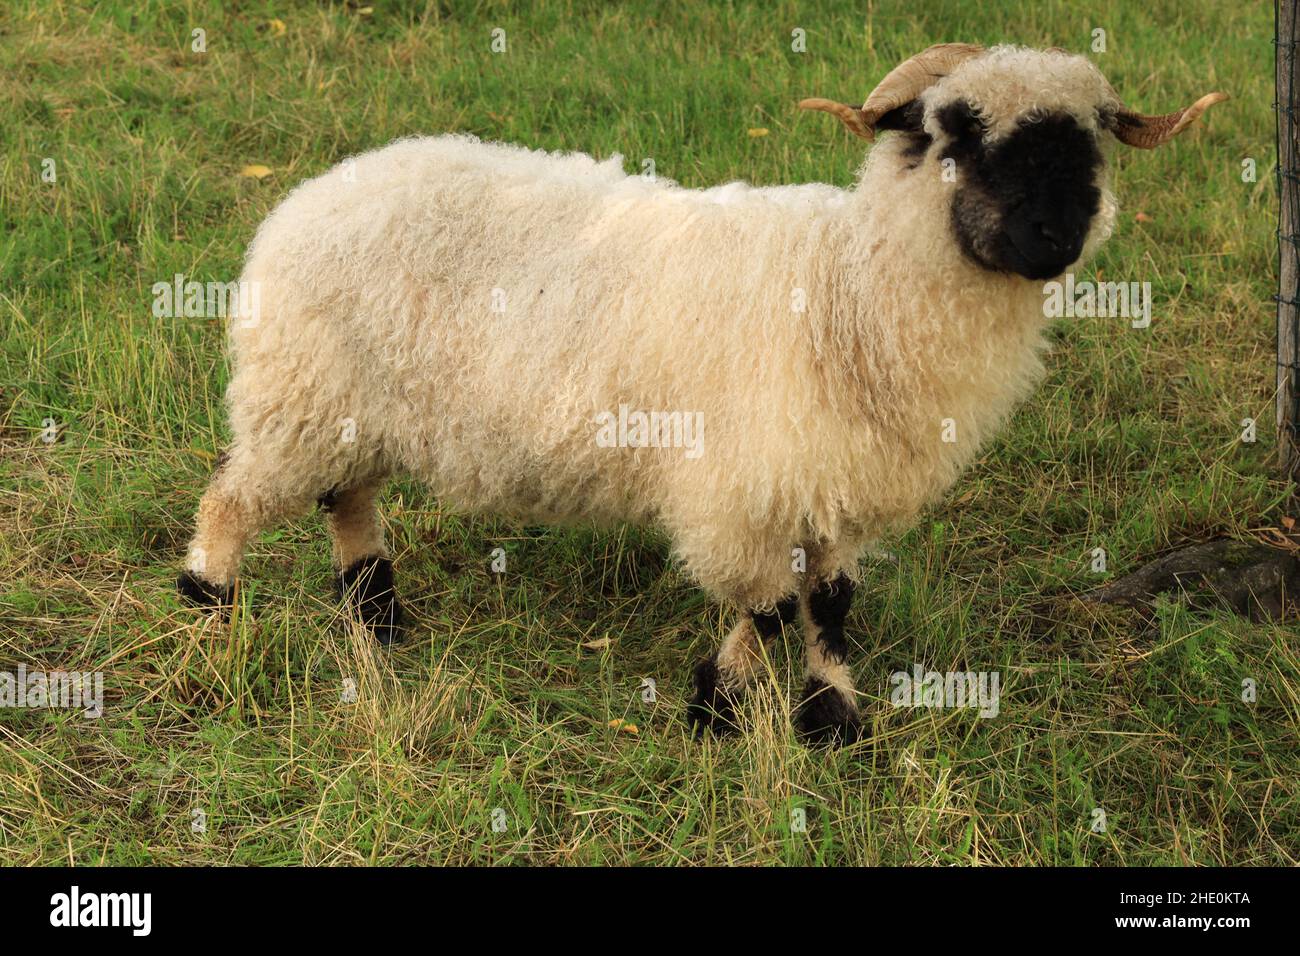 Un mouton blanc avec un bec, un nez et des oreilles noirs.Walliser schwarznase.Mouton à nez noir Banque D'Images